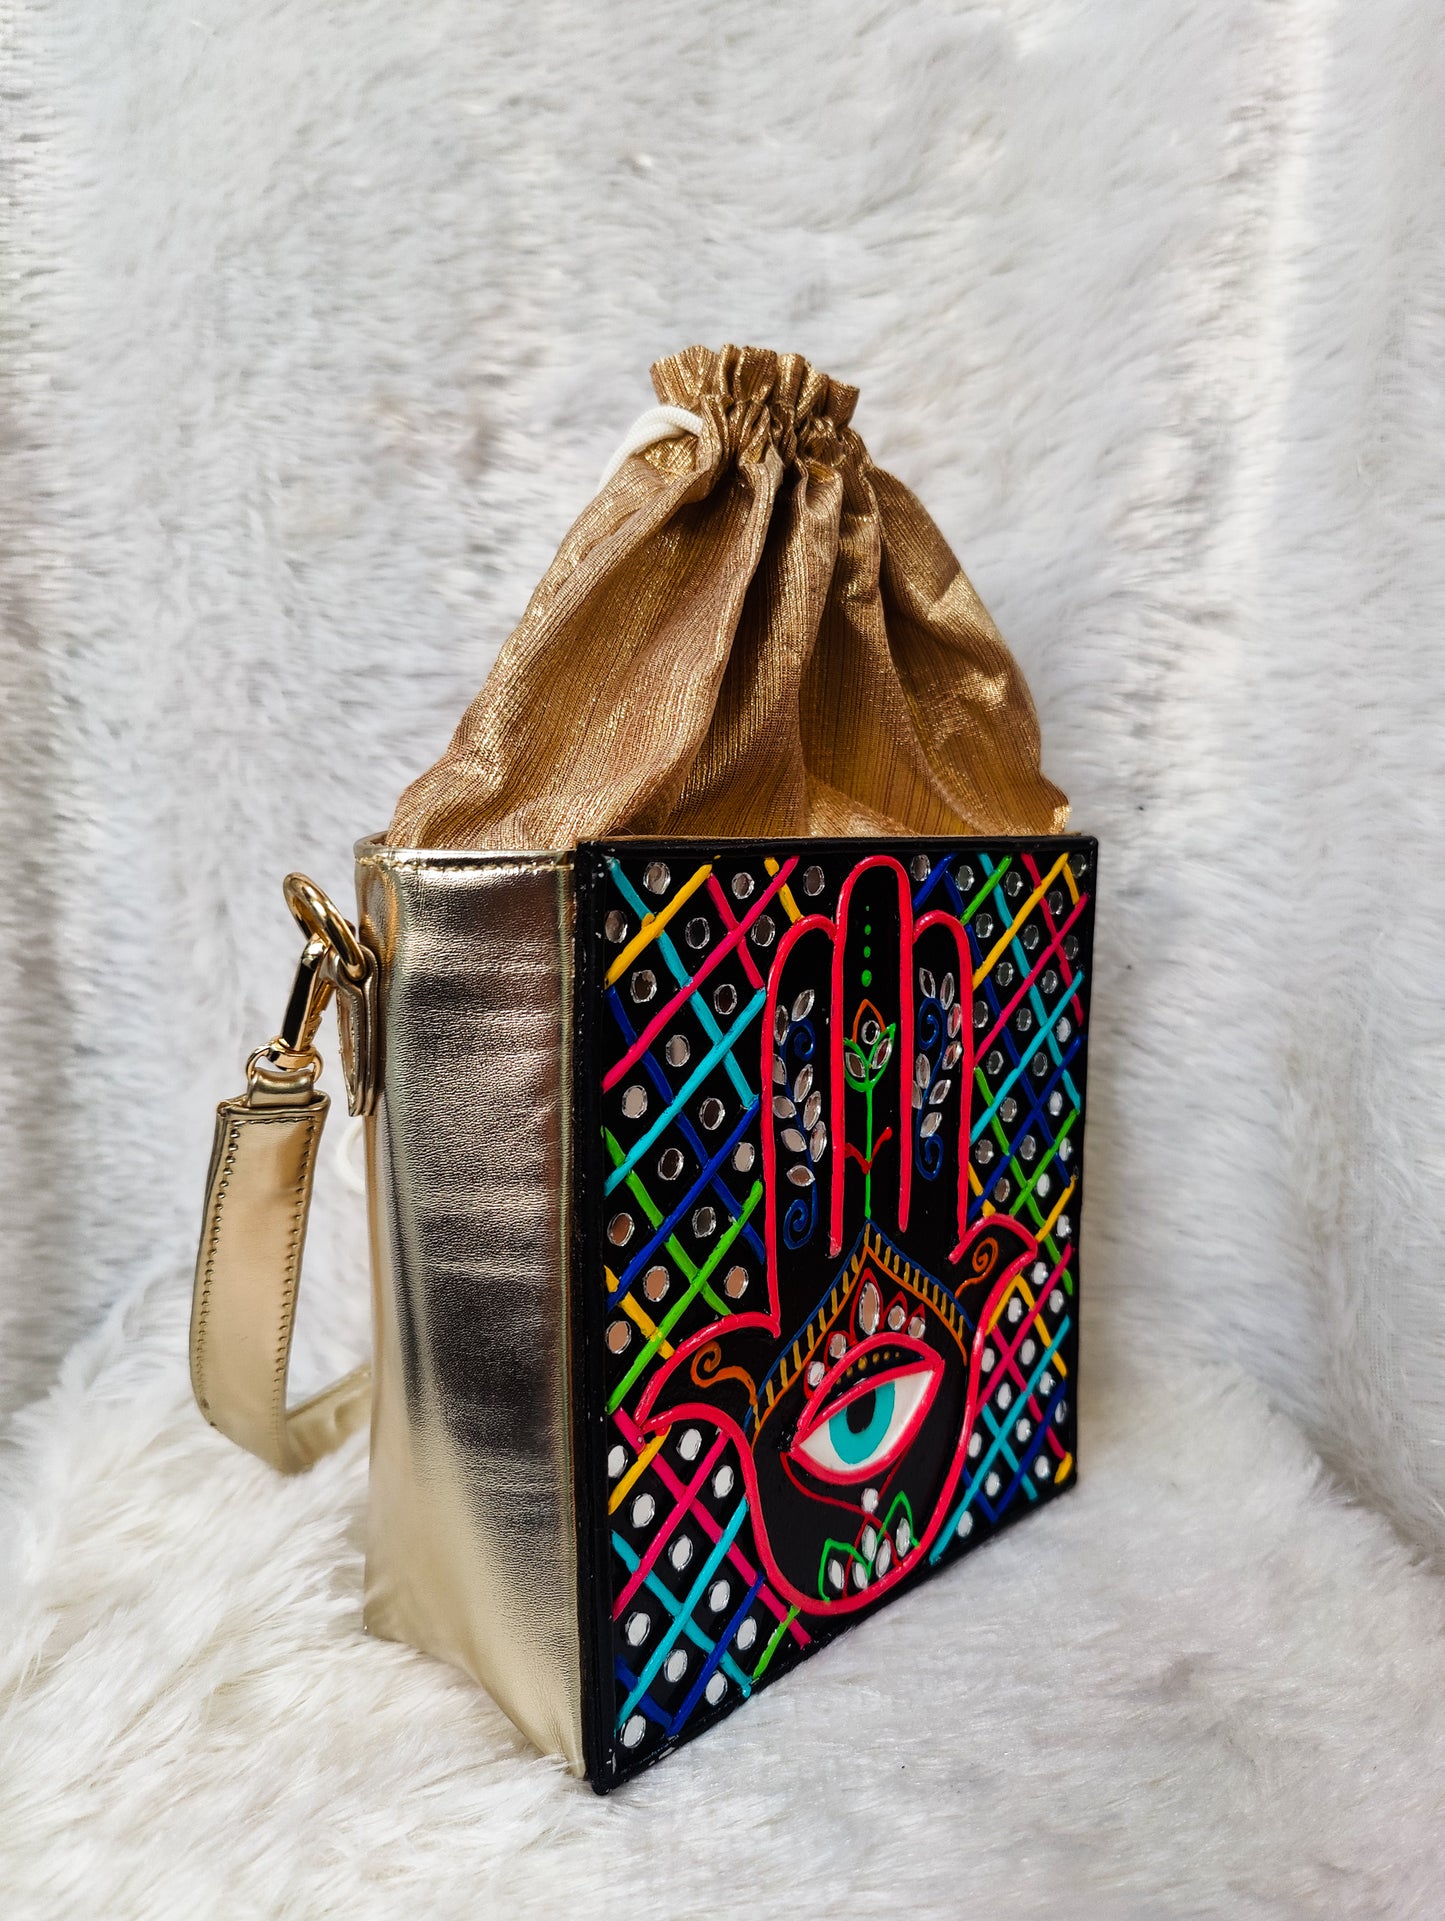 Hamsa Lippan Art Box Bag with Potli and Sling